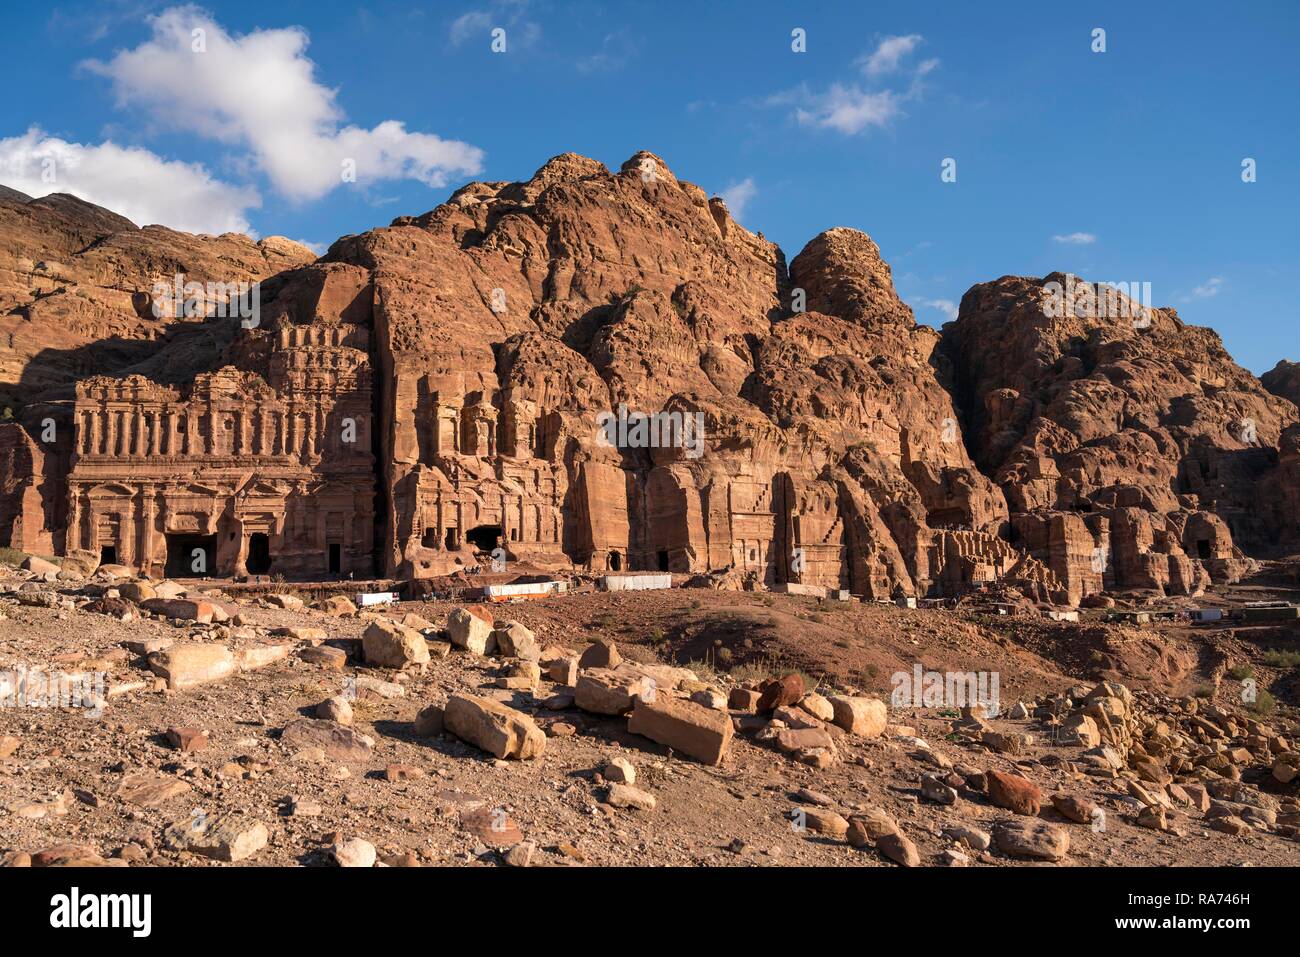 Tombs of the Royal Wall, Petra, Jordan Stock Photo